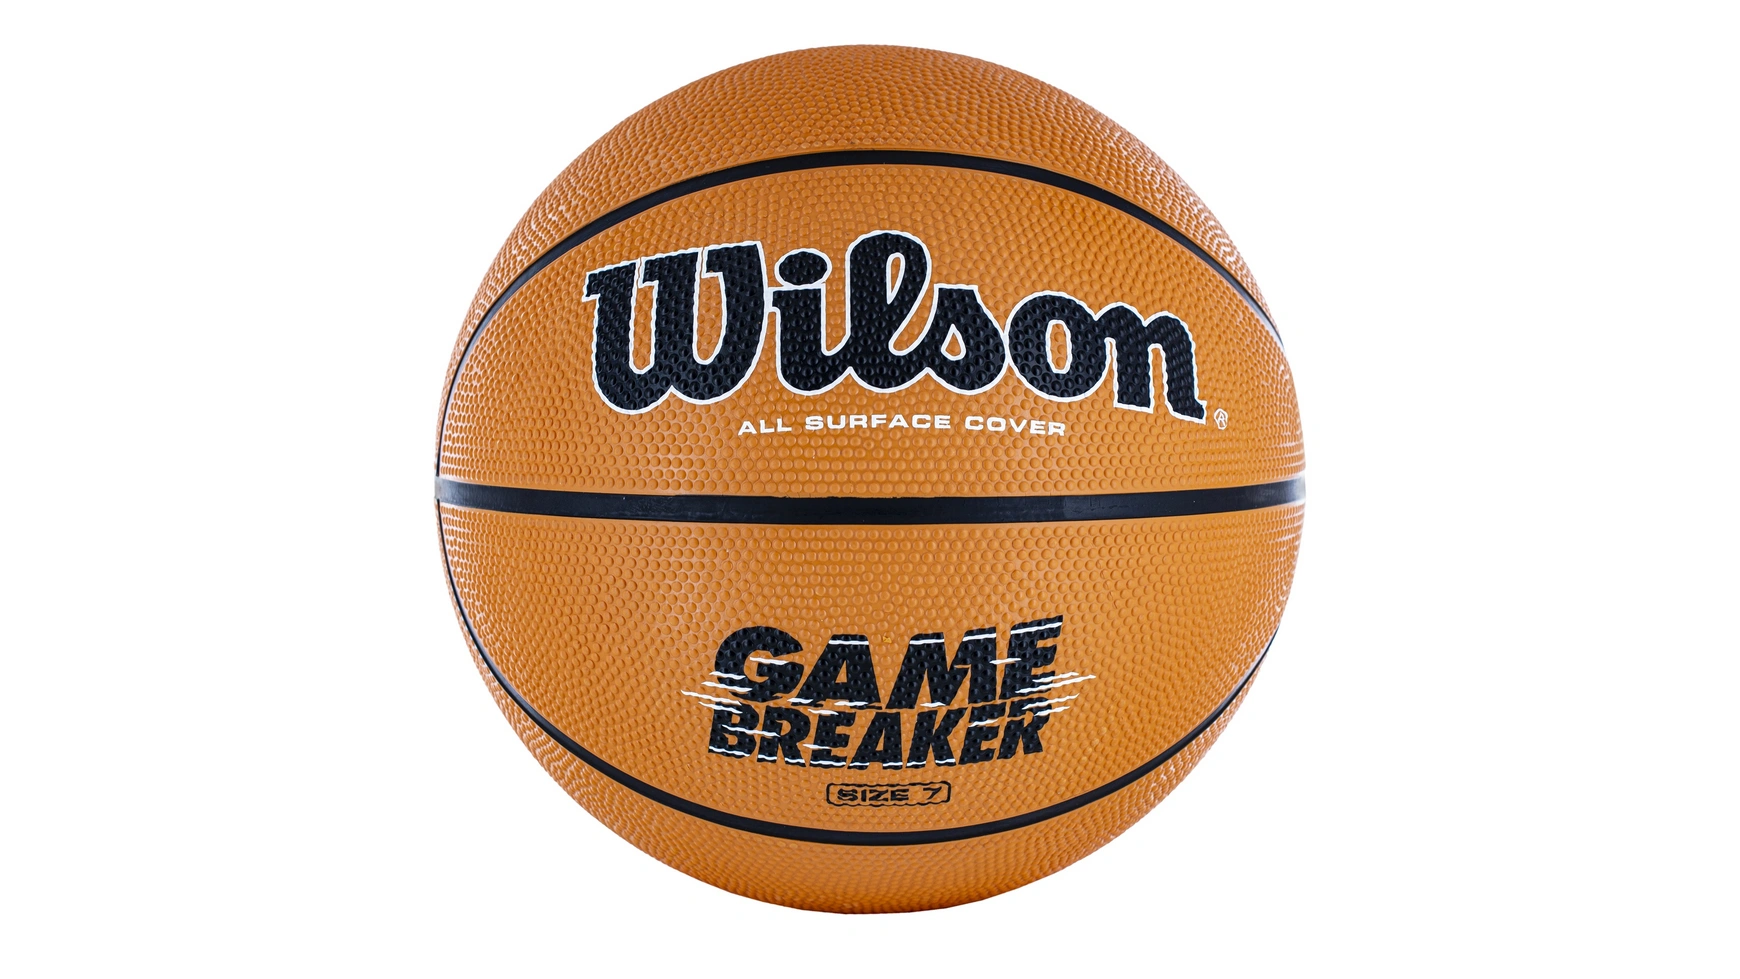 Wilson Basketball Gamebreaker, размер 7 basketball hoop mesh 13 buckles basketball net professional sunscreen standard nylon basketball net for outdoor sport supplies